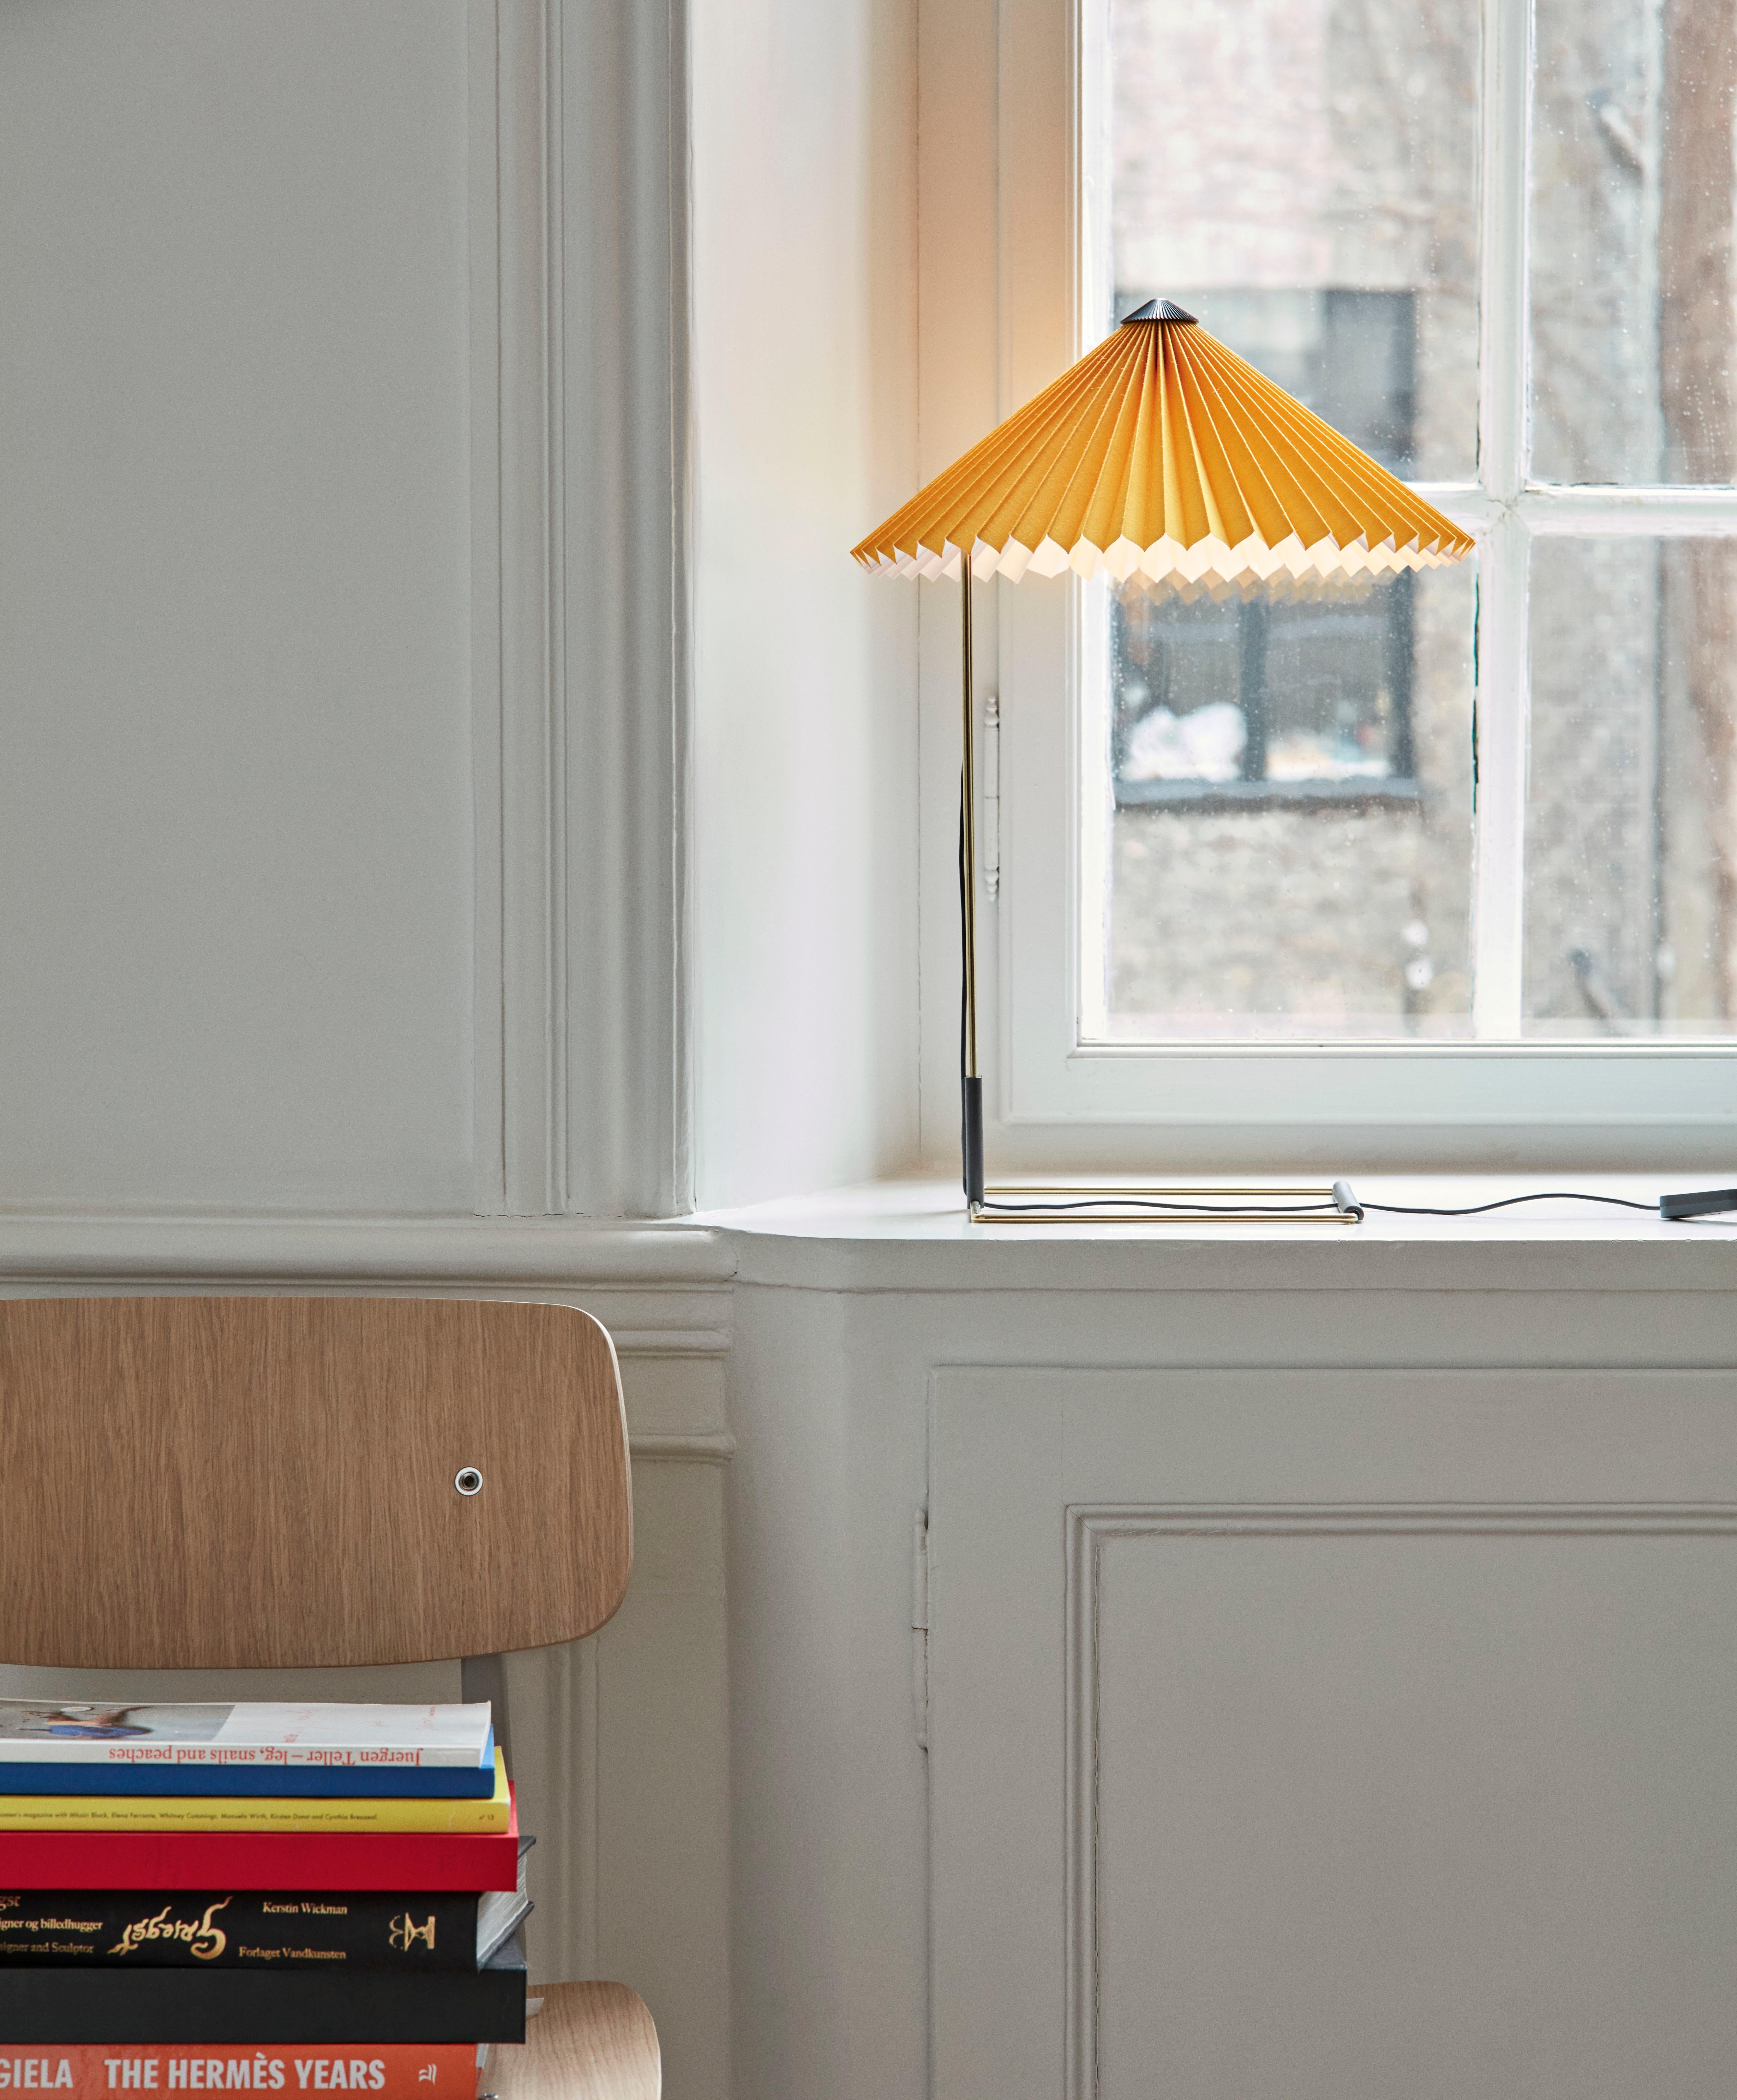 Die von Inga Sempé entworfene Matin Tischleuchte bietet ein modernes und zugleich poetisches Design, dessen Konstruktion visuelle Zartheit mit physischer Robustheit verbindet. 

Sie besteht aus einem gebogenen Stahldrahtgestell in poliertem